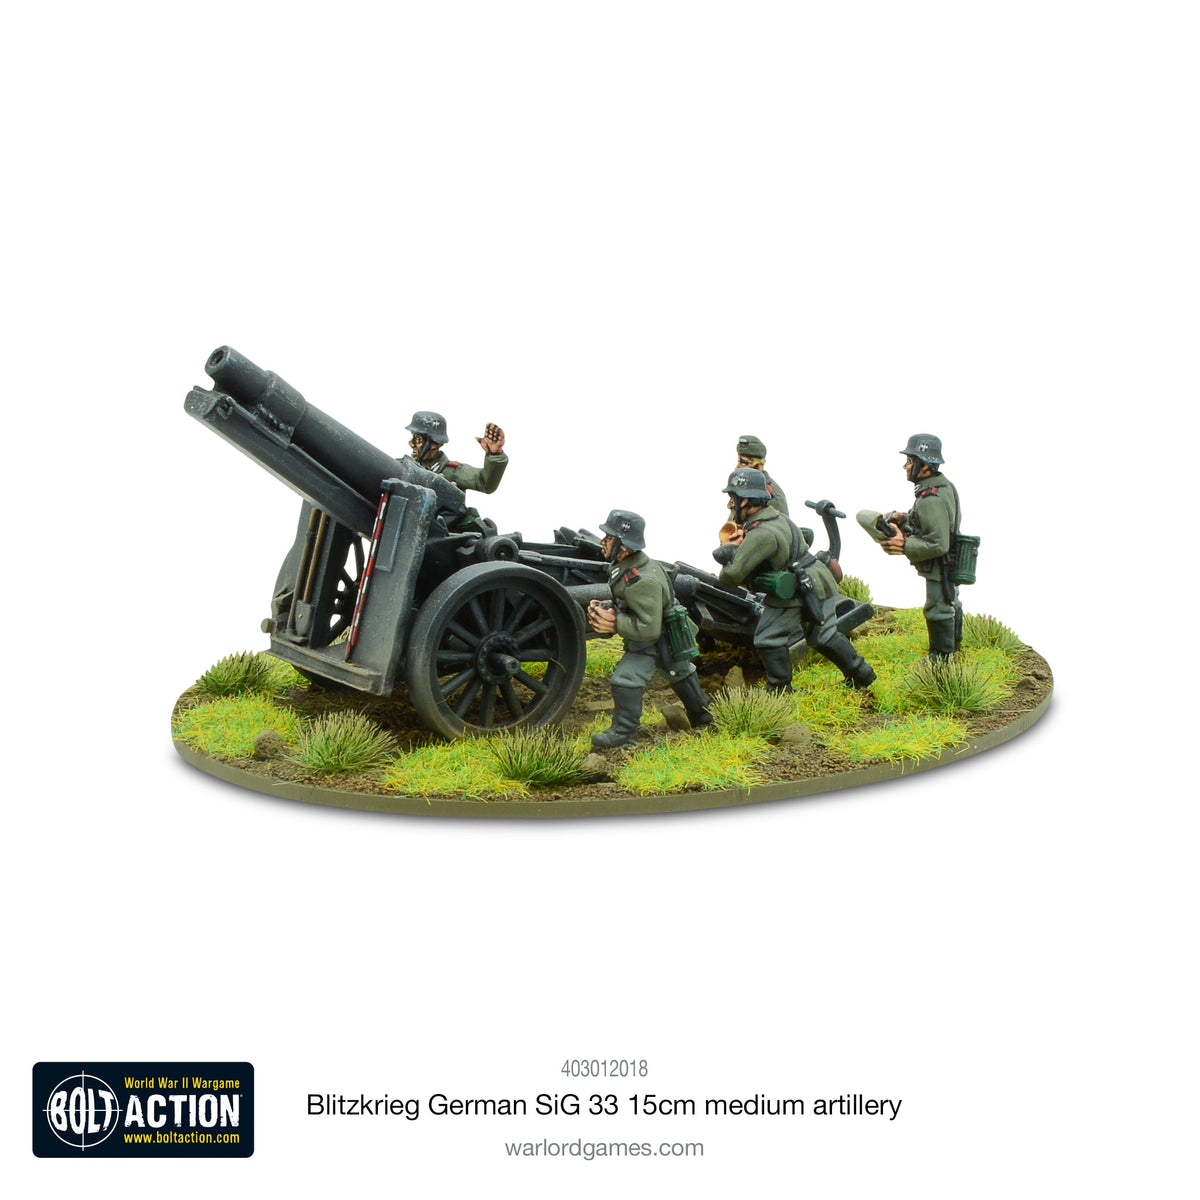 Blitzkreig German SIG 33 15cm heavy howitzer